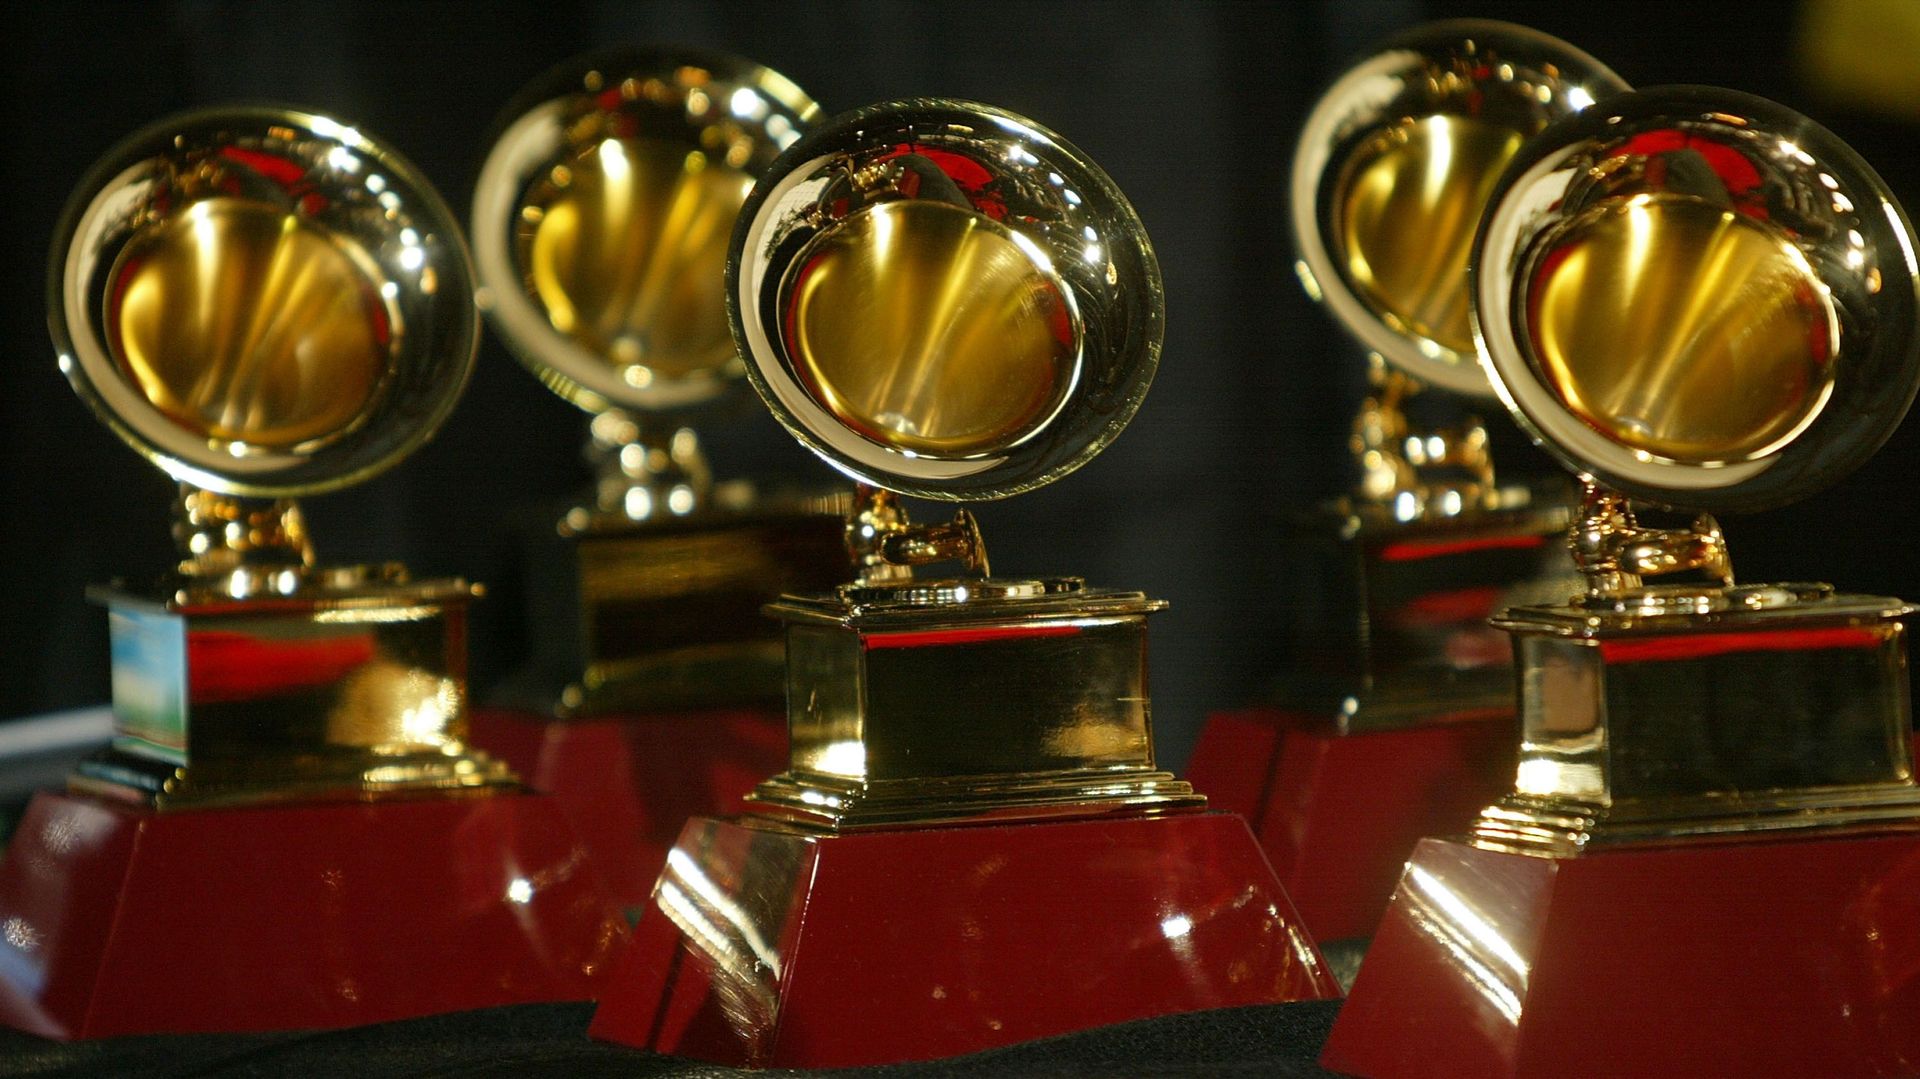 grammy-awards-tous-les-nommes-de-la-categorie-rock-sont-pour-la-premiere-fois-toutes-des-femmes